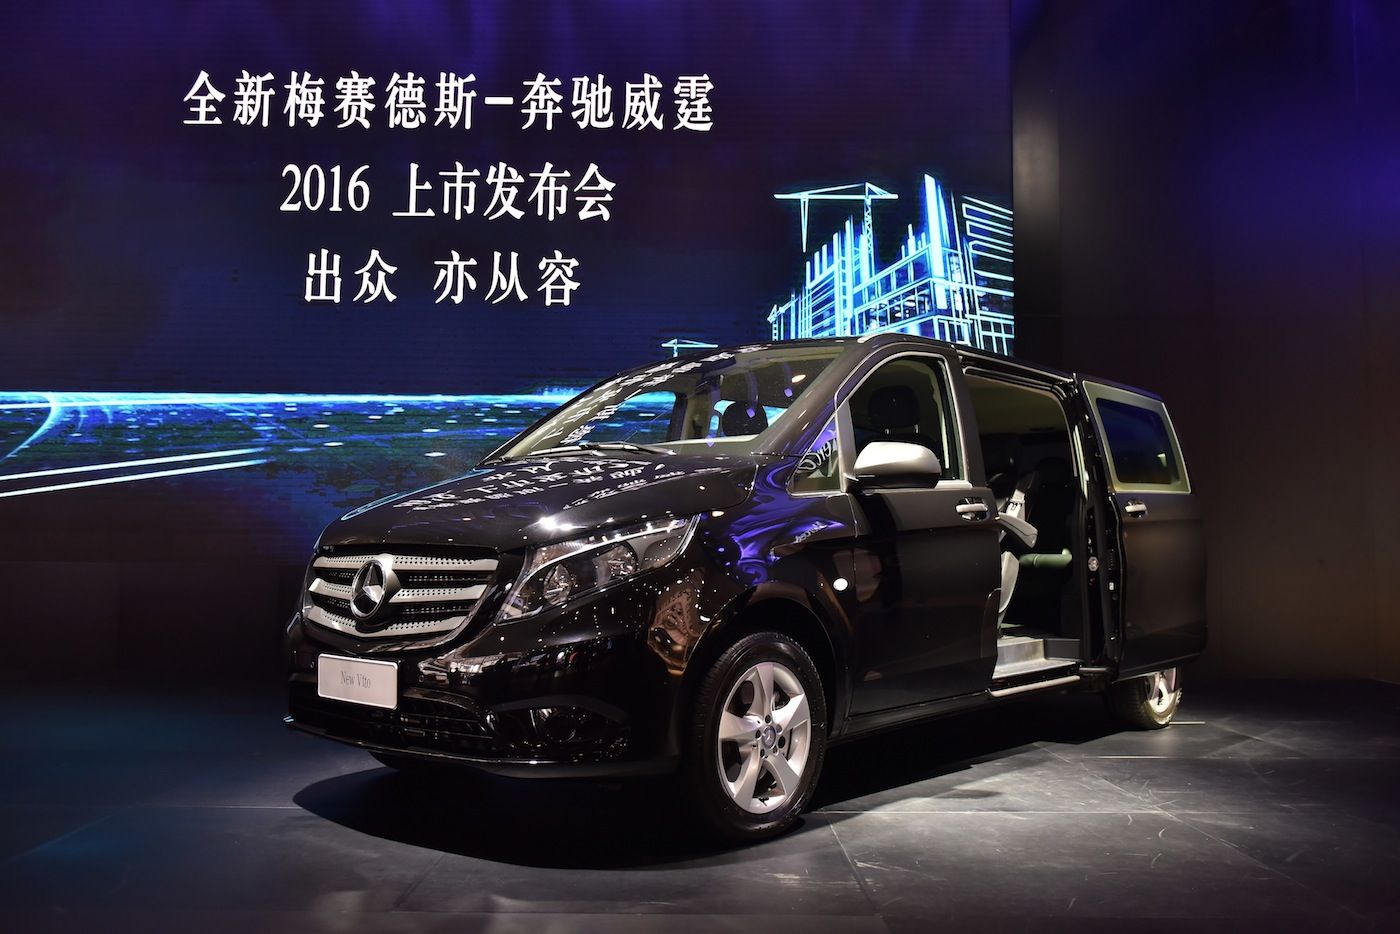 La Vito de Mercedes-Benz llega a China